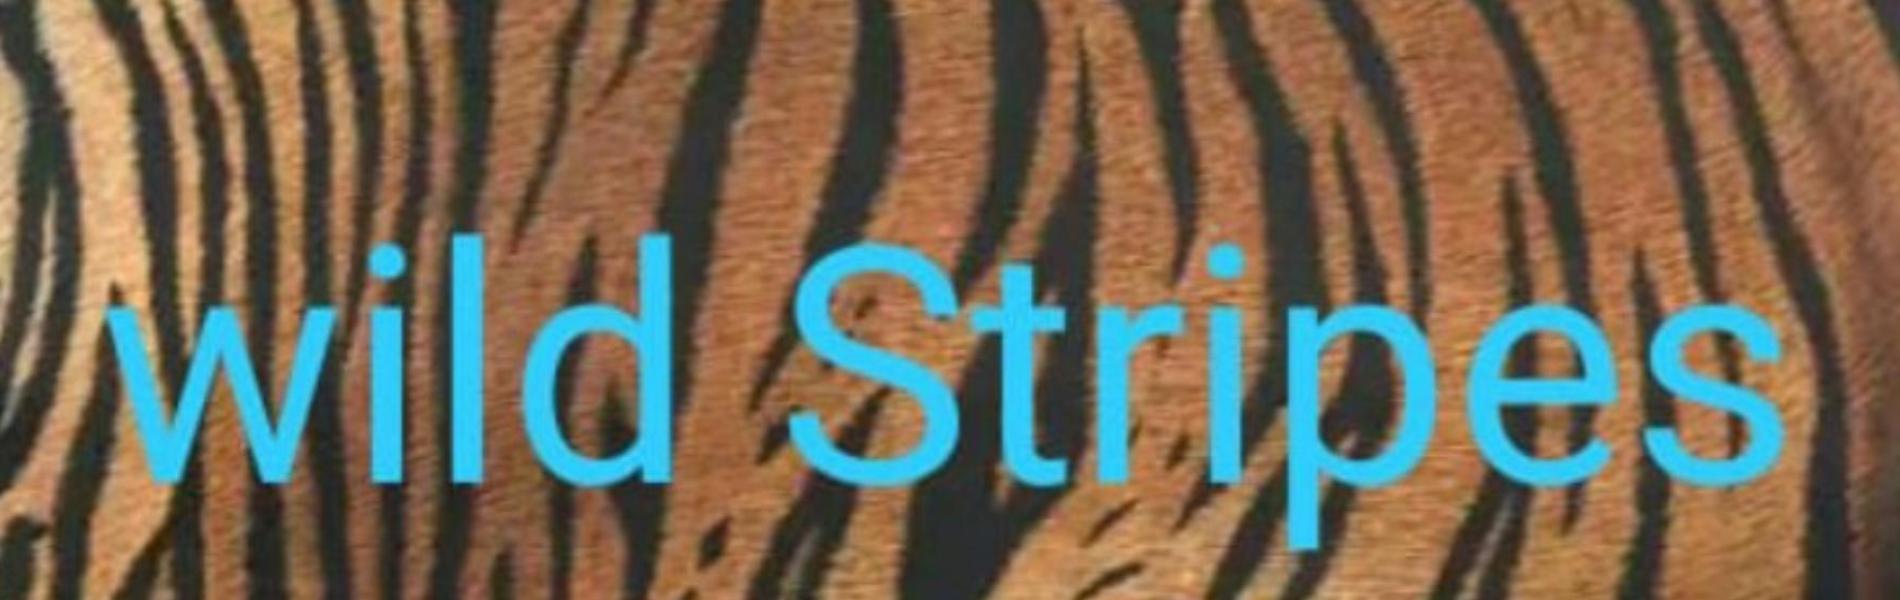 Wild Stripes